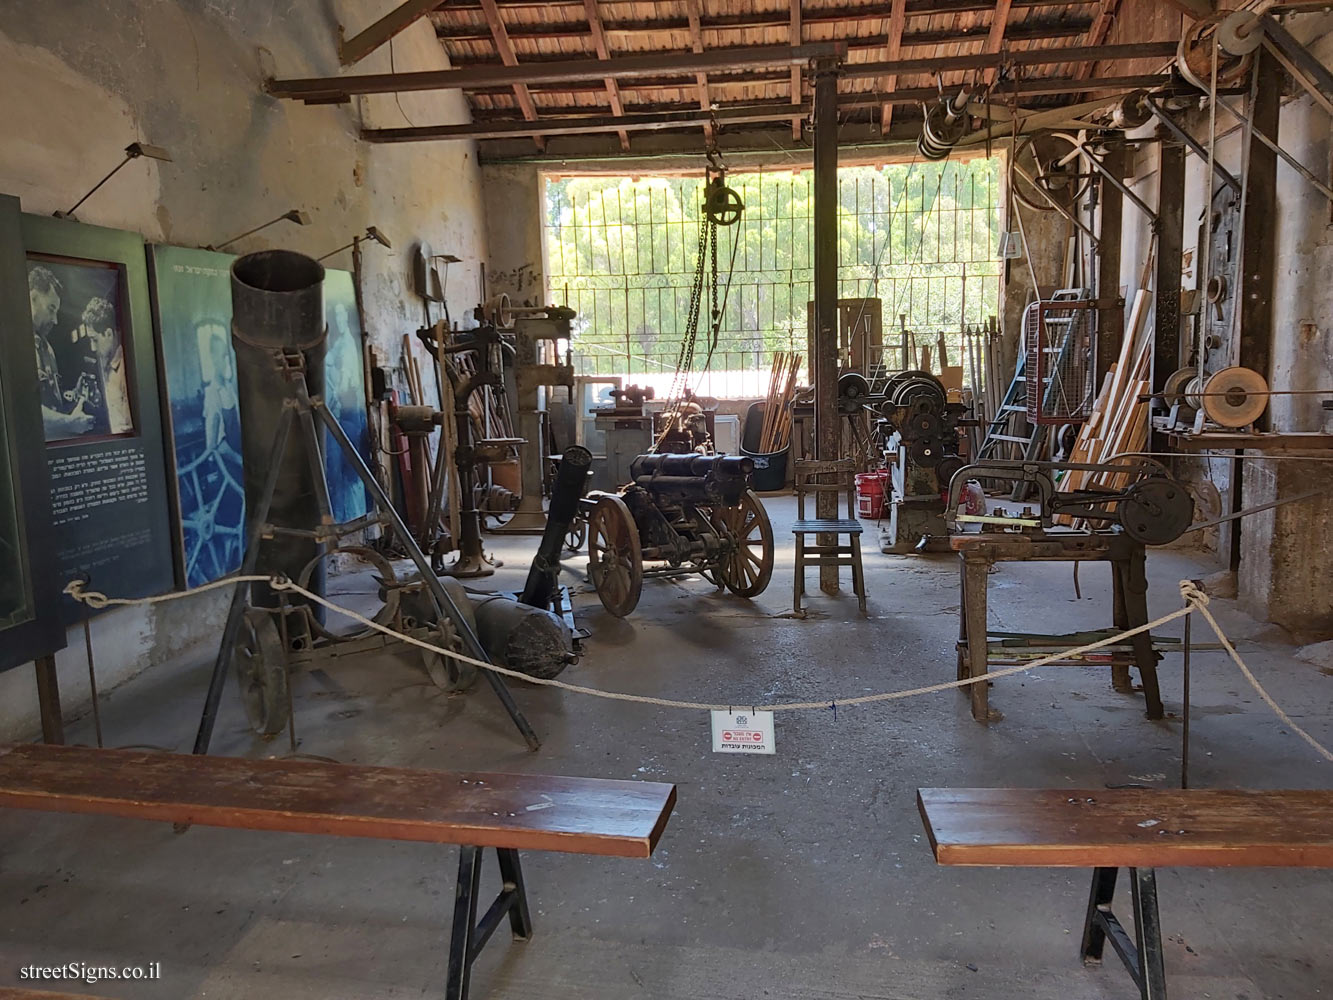 Mikve Israel - Heritage Sites in Israel - The Workshop - Sderot Krause 23, Israel